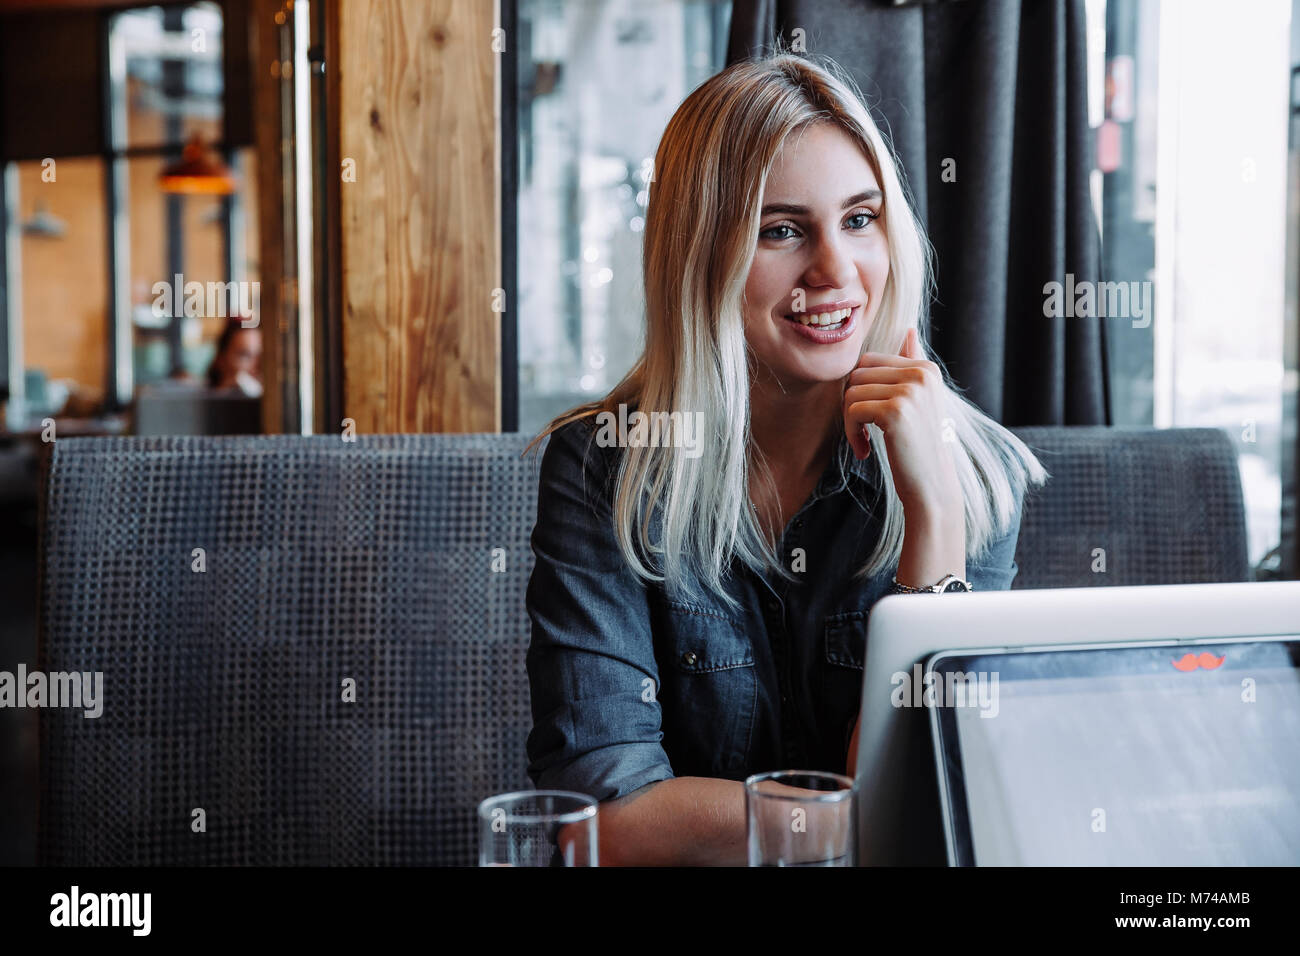 Un beau blond businesswoman dans une chemise en jean est assis dans un restaurant et communique avec ses amis Banque D'Images